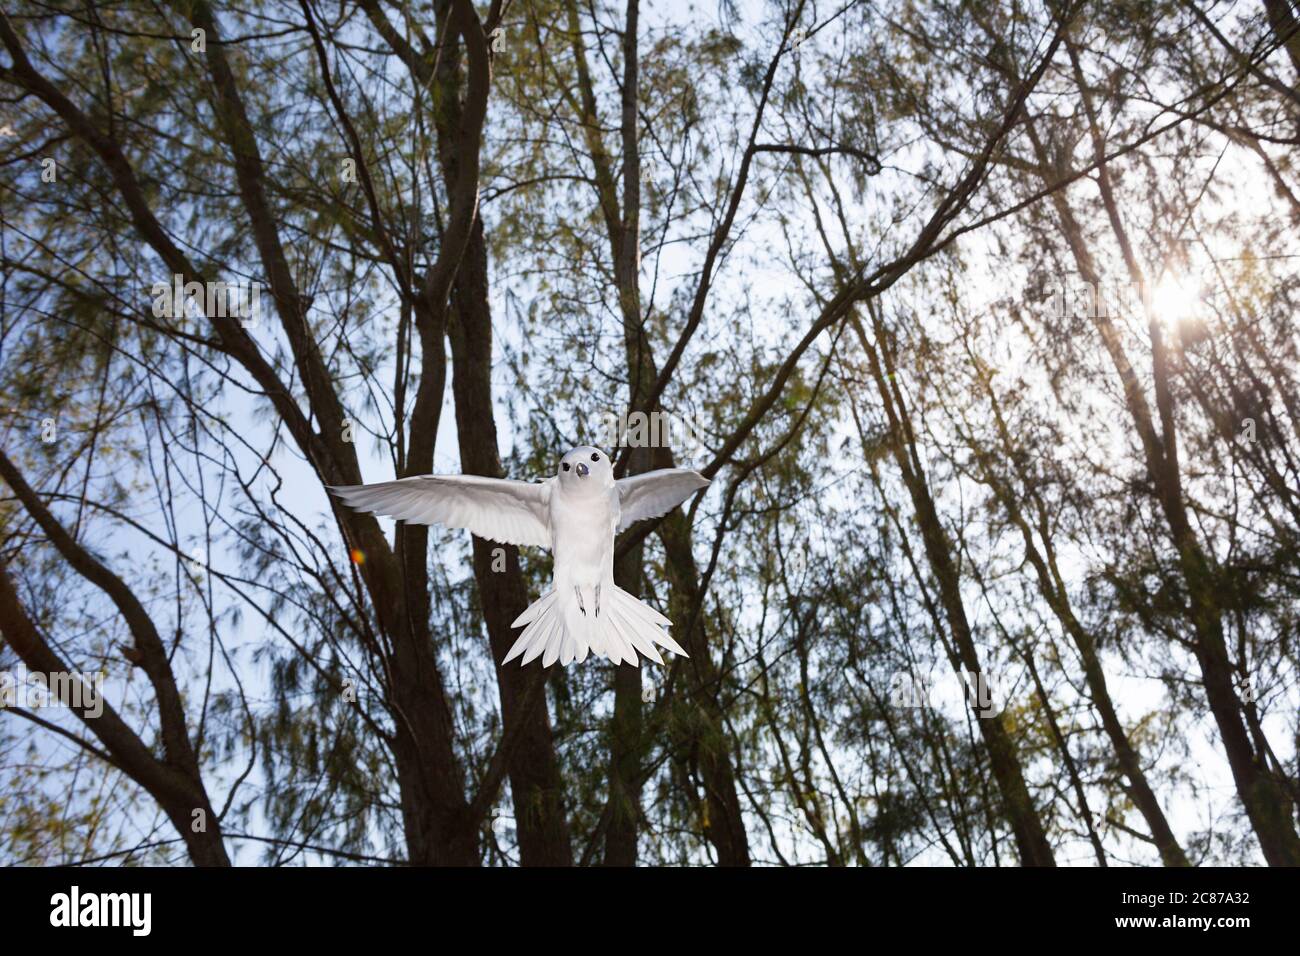 Terna bianca o terna delle fate, Gygis alba rothschildi, che si trova su una stativo litoranea di casuarina, Sand Island, Midway Atoll National Wildlife Refuge Foto Stock